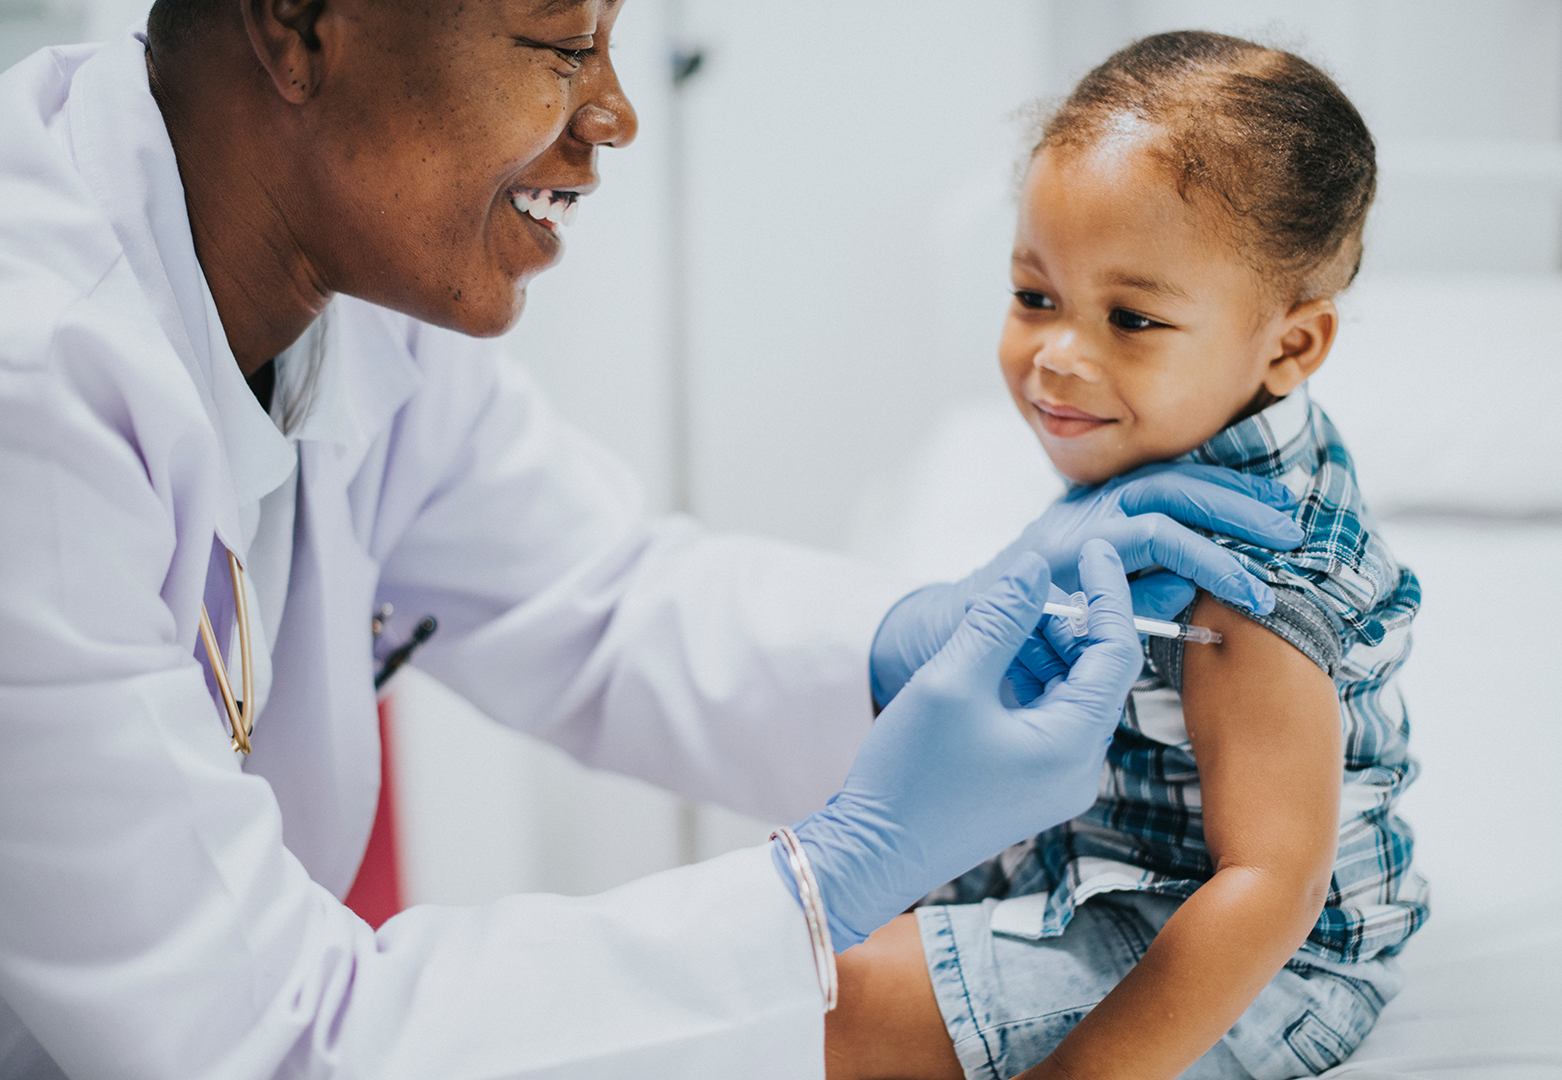 EE.UU. comienza a vacunar a niños de 5 a 11 años contra el COVID-192 min read